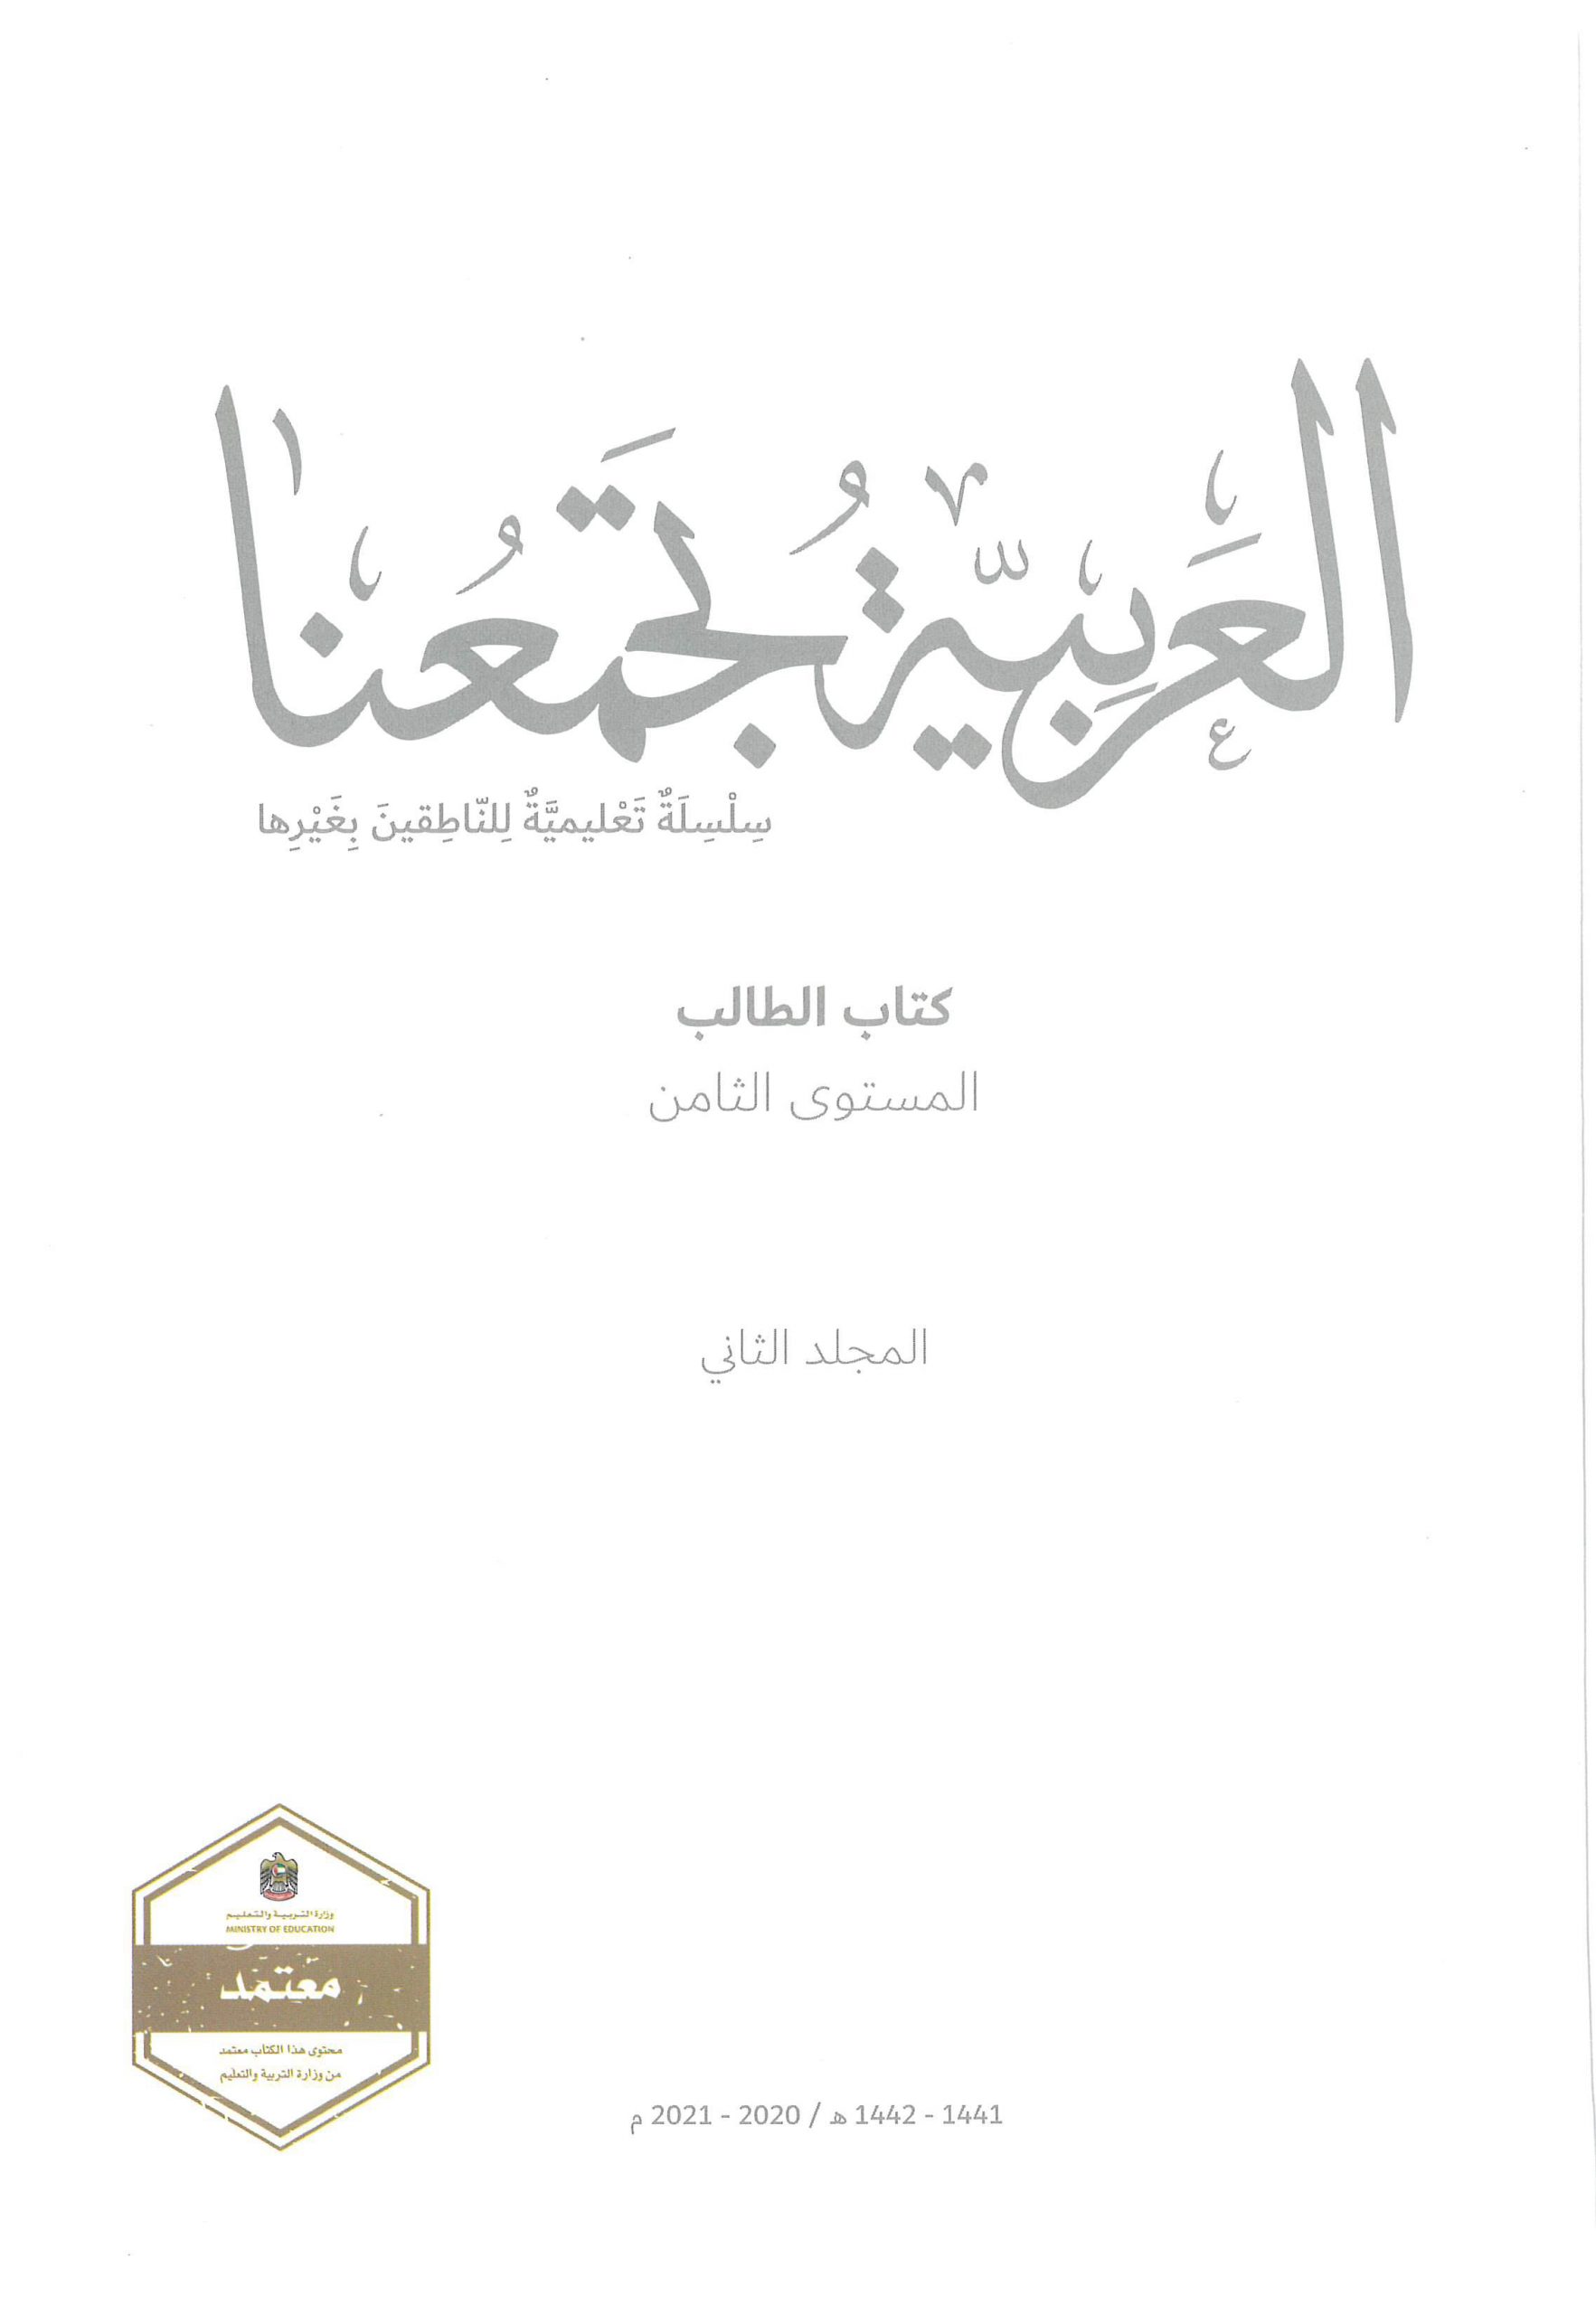 كتاب الطالب الفصل الدراسي الثاني 2020-2021 لغير الناطقين بها الصف الثامن مادة اللغة العربية 